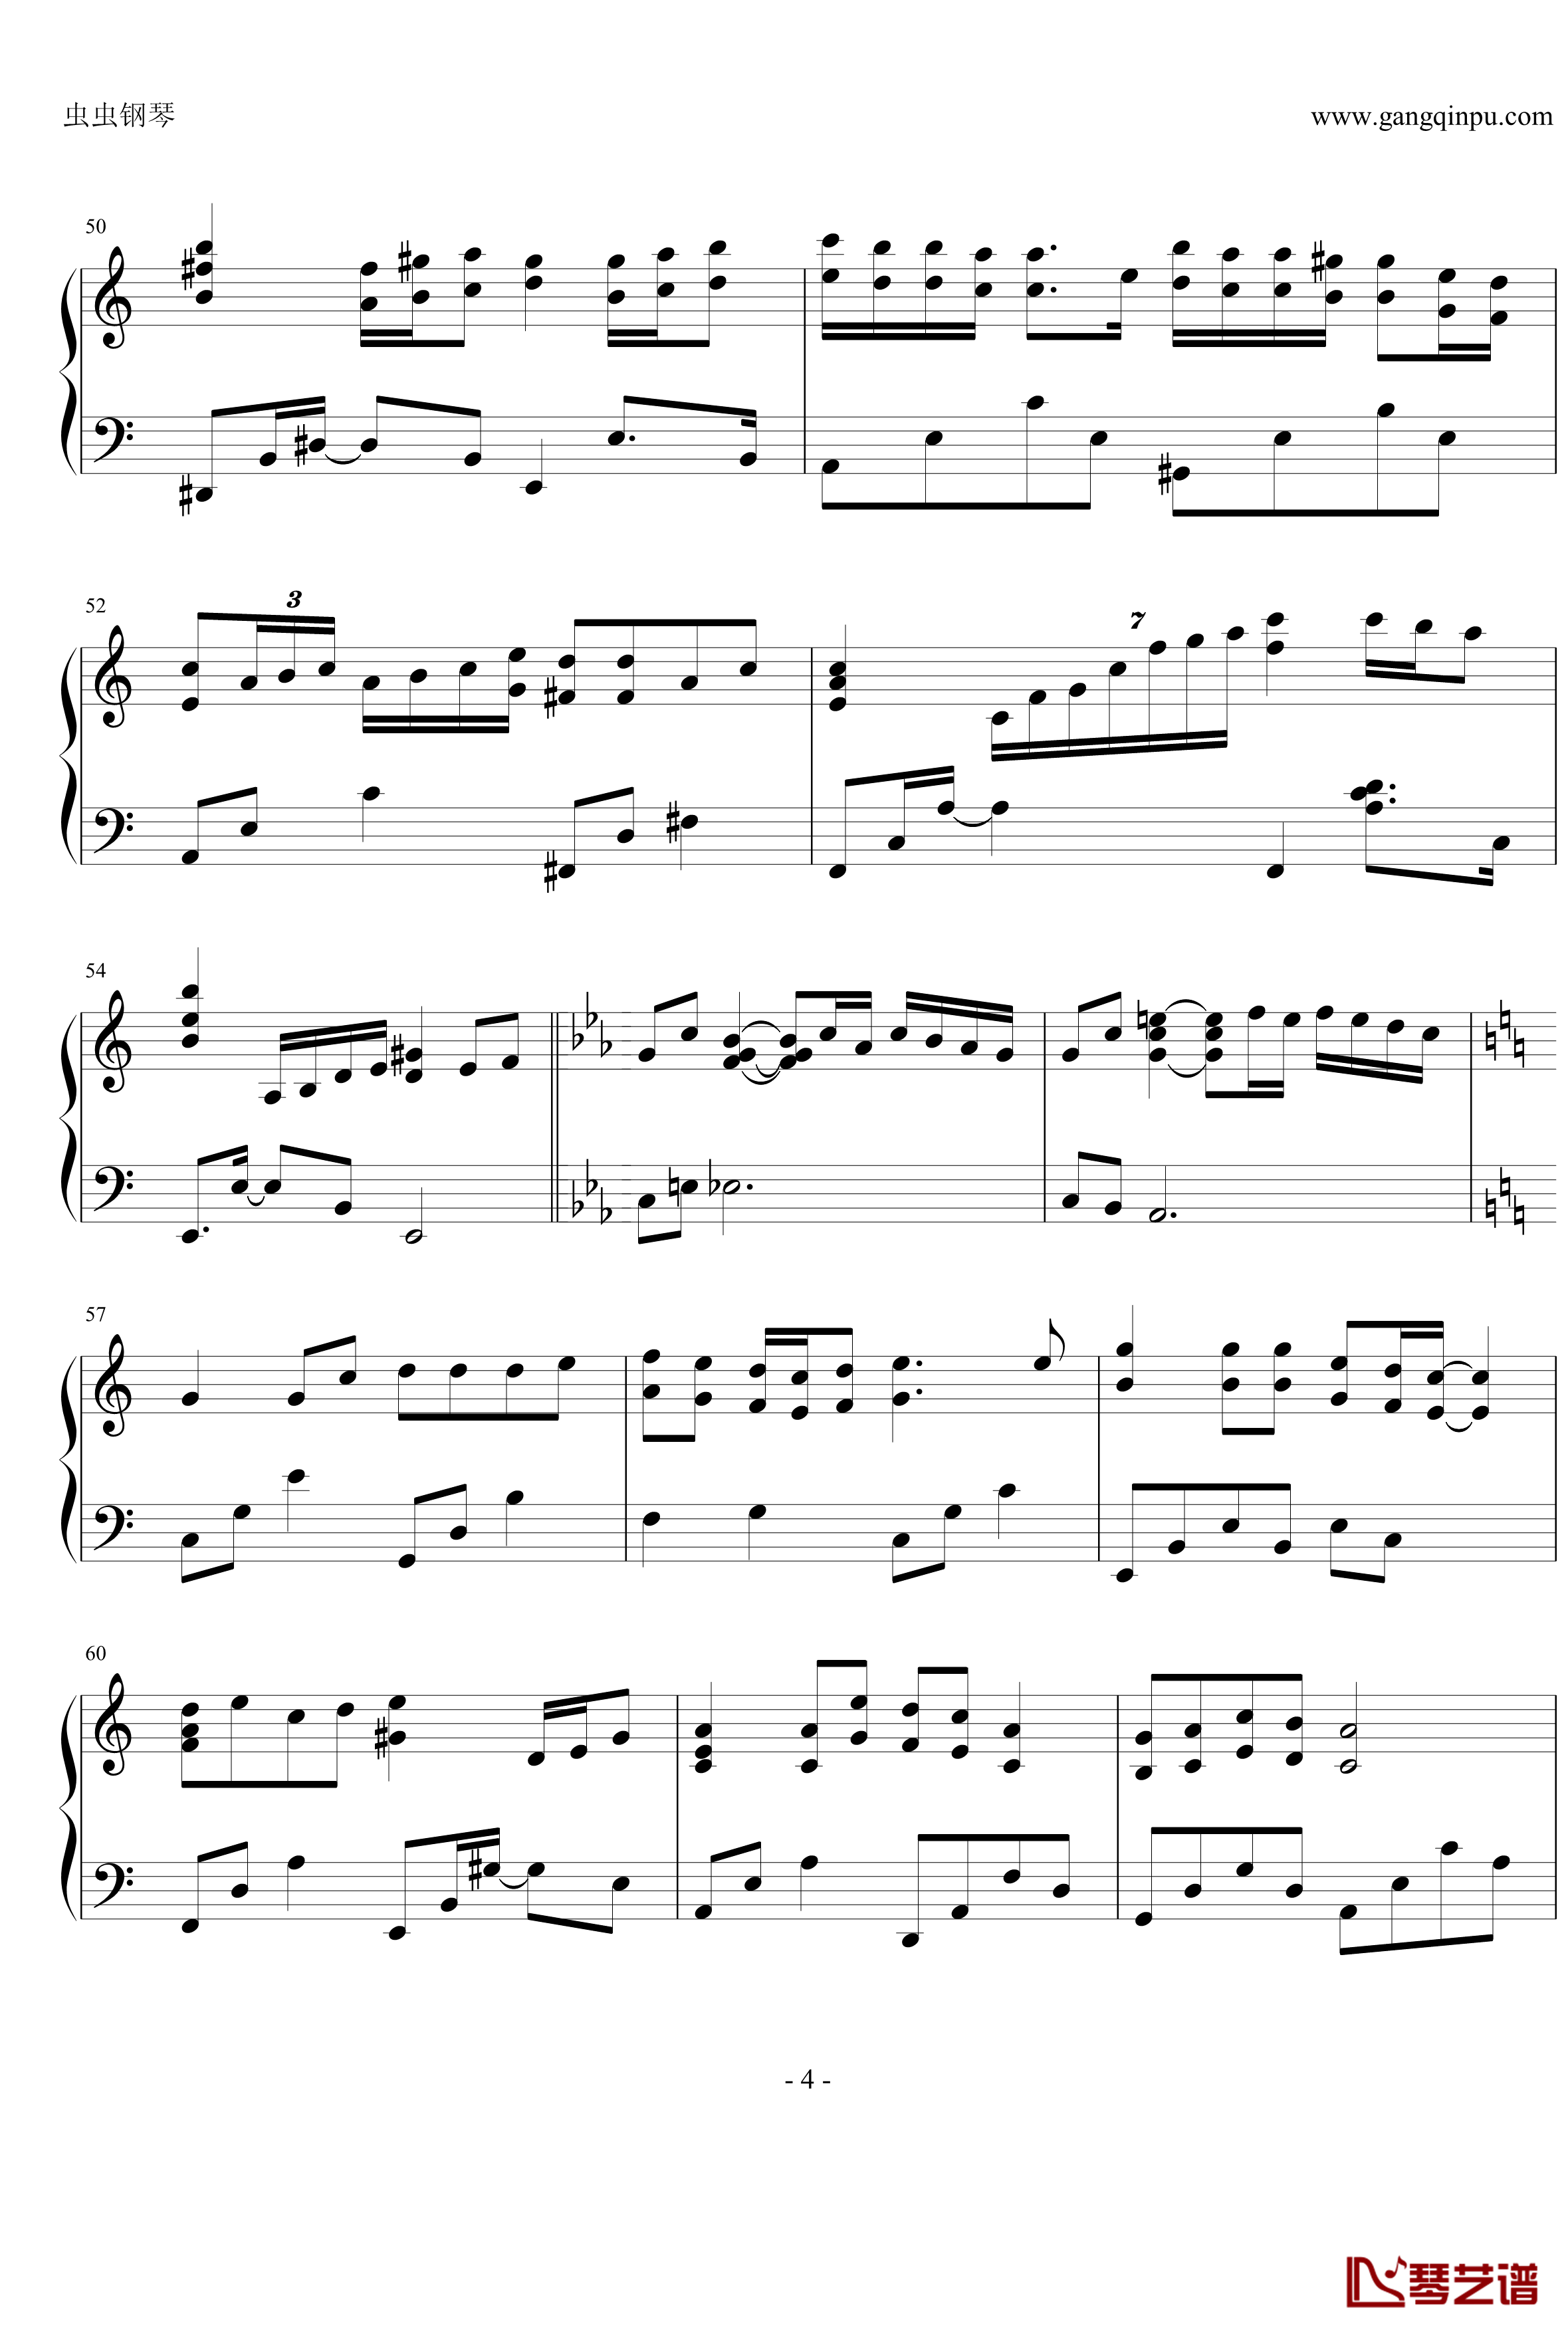 瑟鲁之歌钢琴谱-钢琴独奏版-宫崎吾朗4